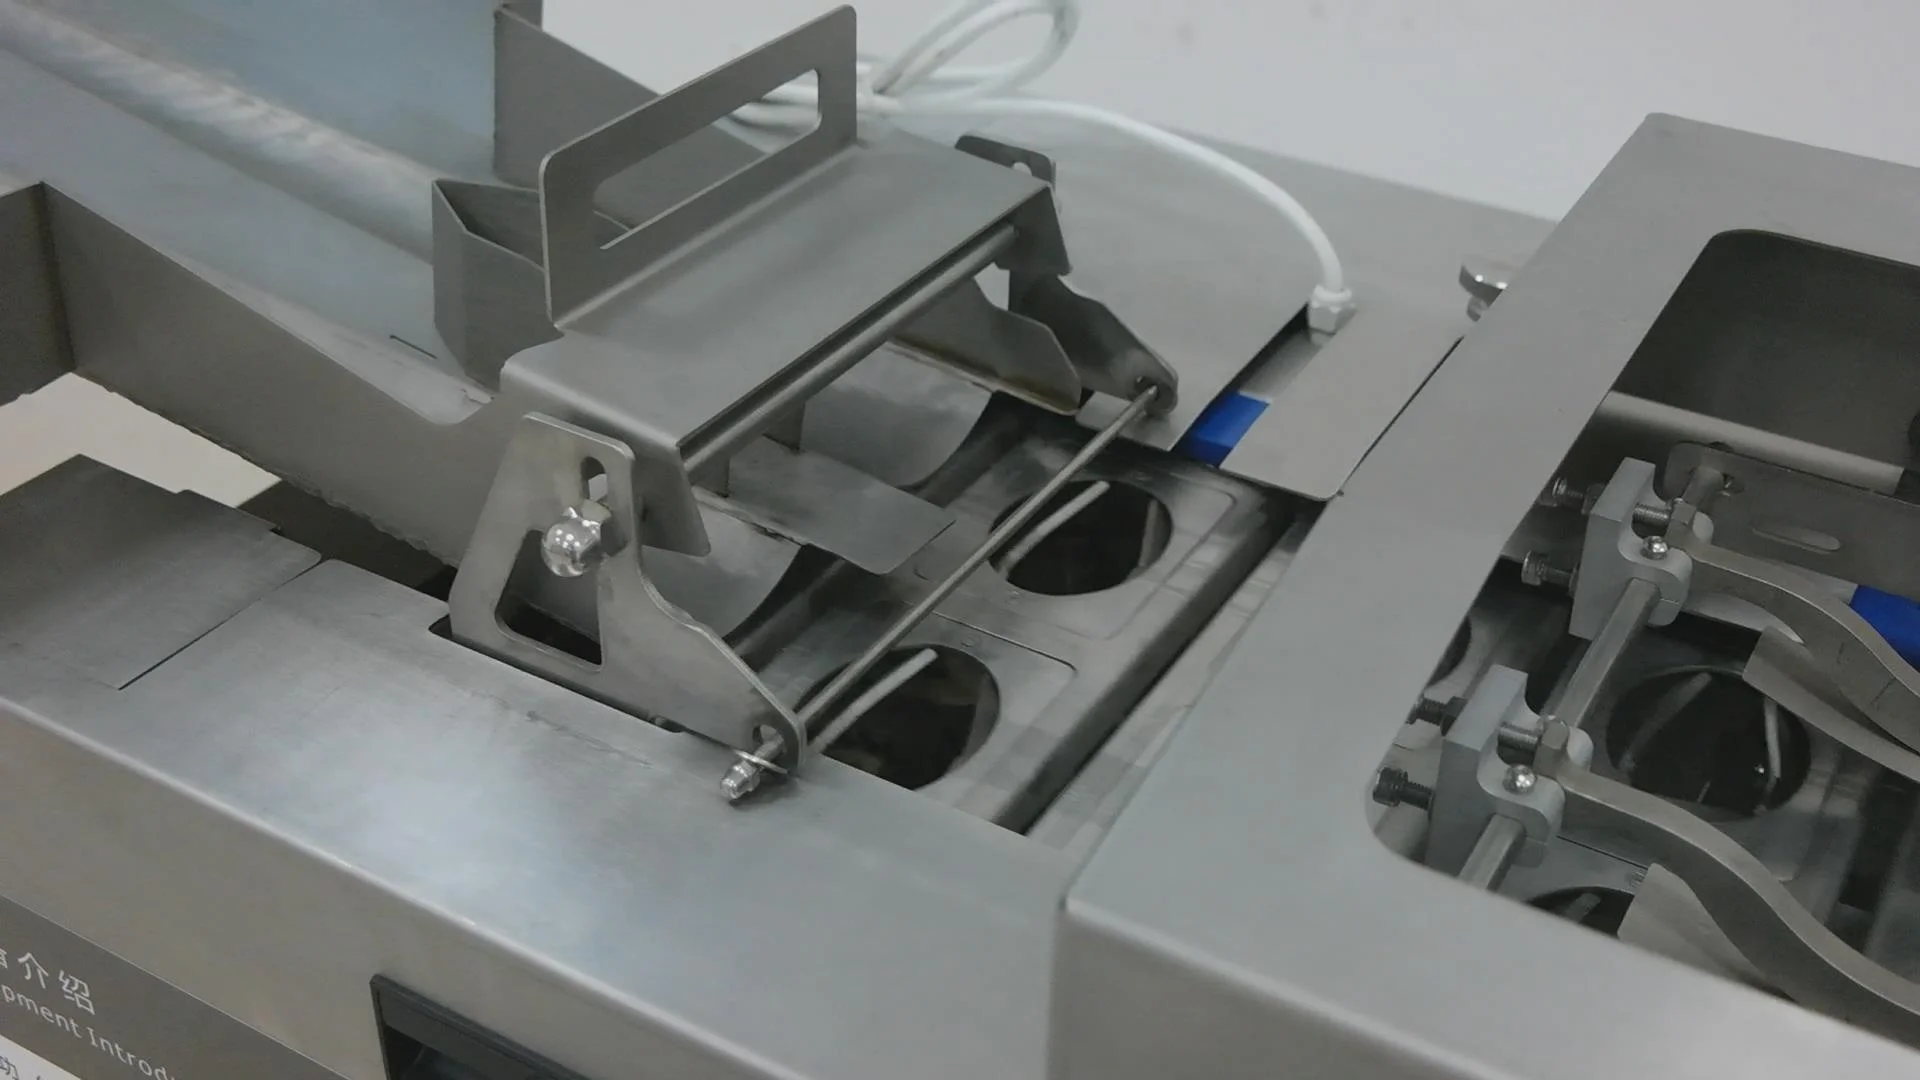 Egg white and egg yolk separator/ automatic egg breaker separator machine / egg breaker